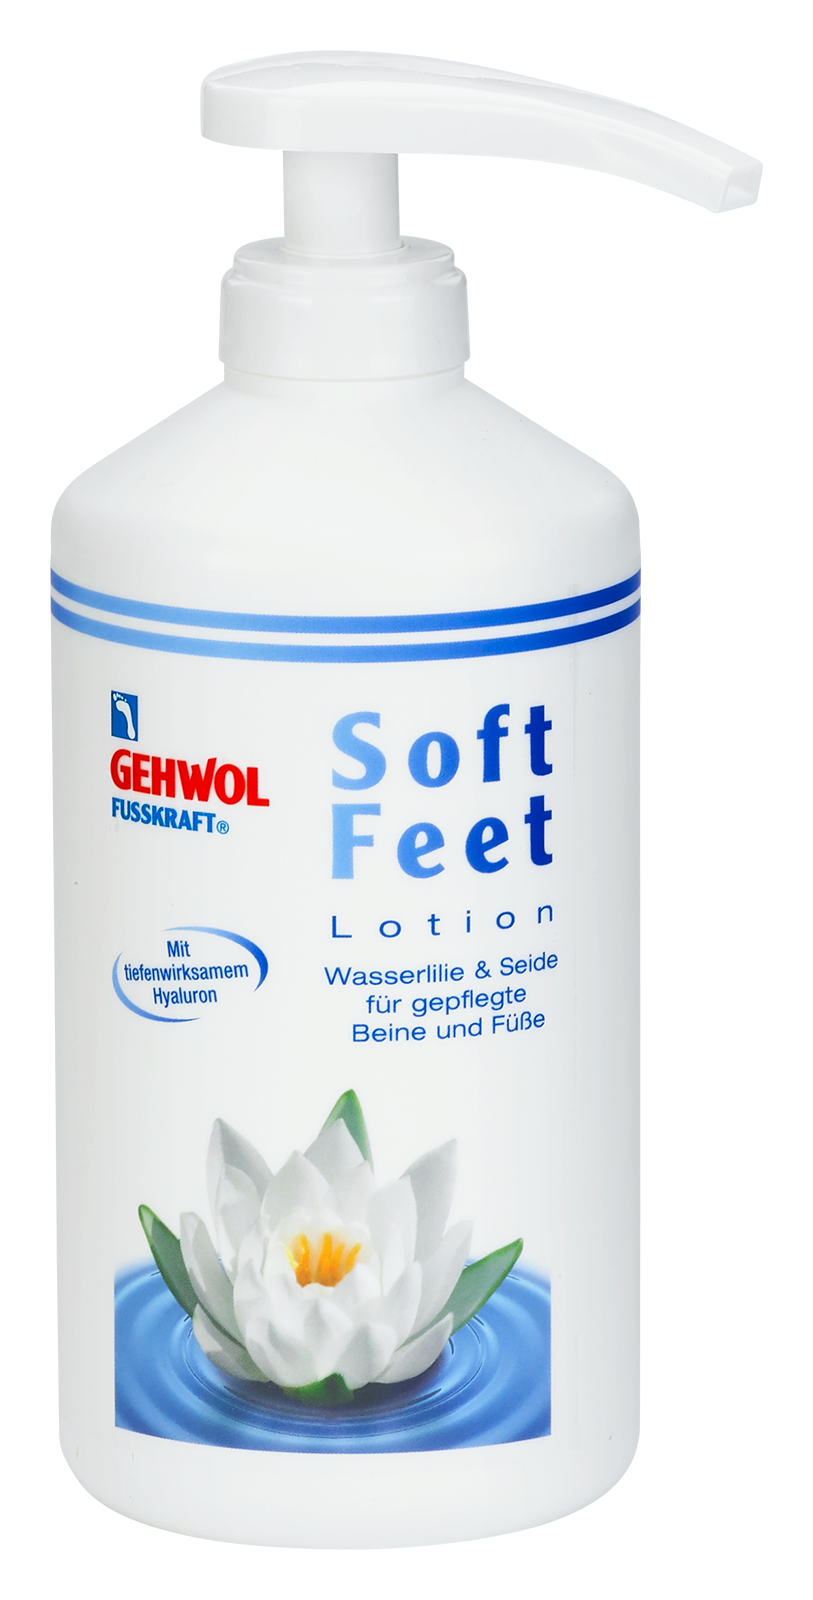 Billede af Gehwol Fusskraft soft feet lotion 500 ml med pumpe